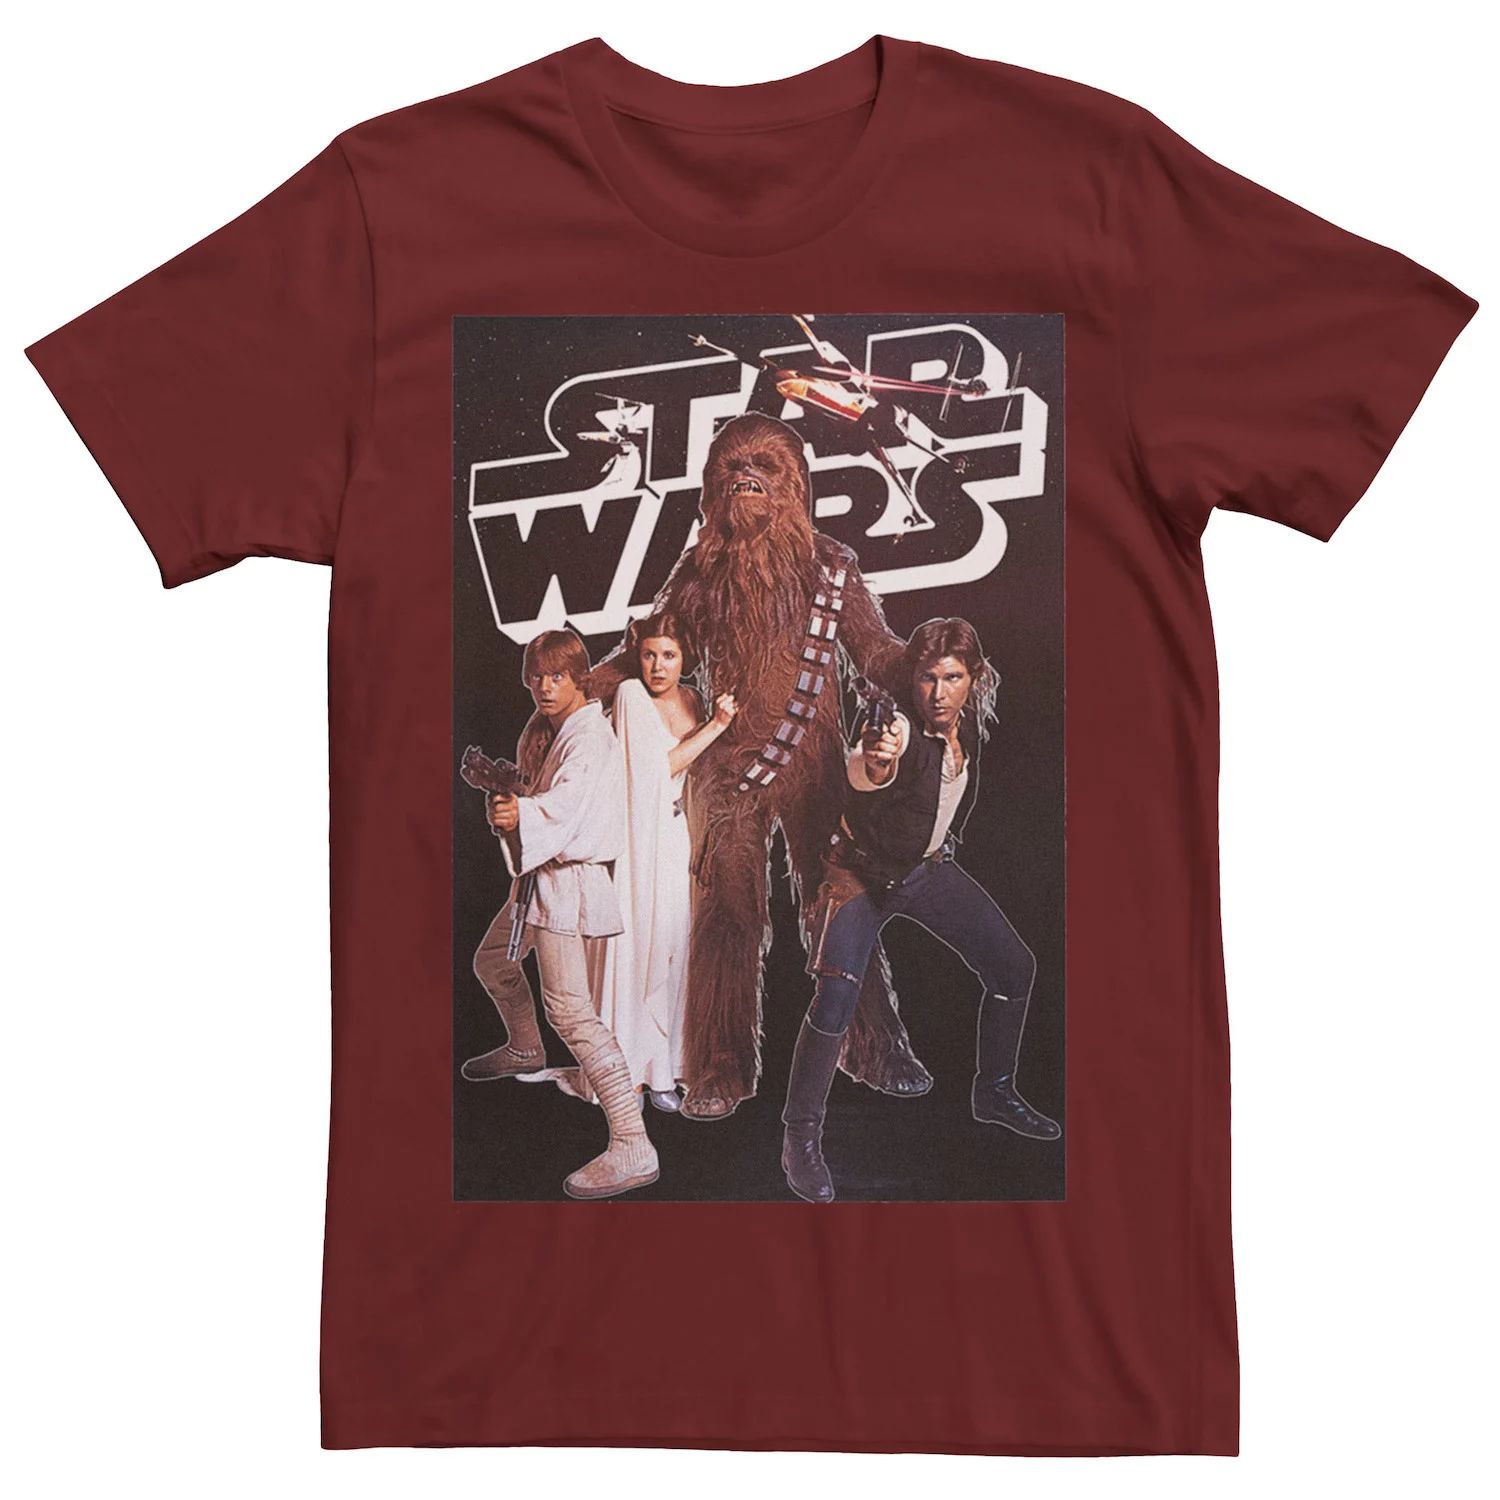 Мужская винтажная футболка с плакатом для группы Star Wars цена и фото